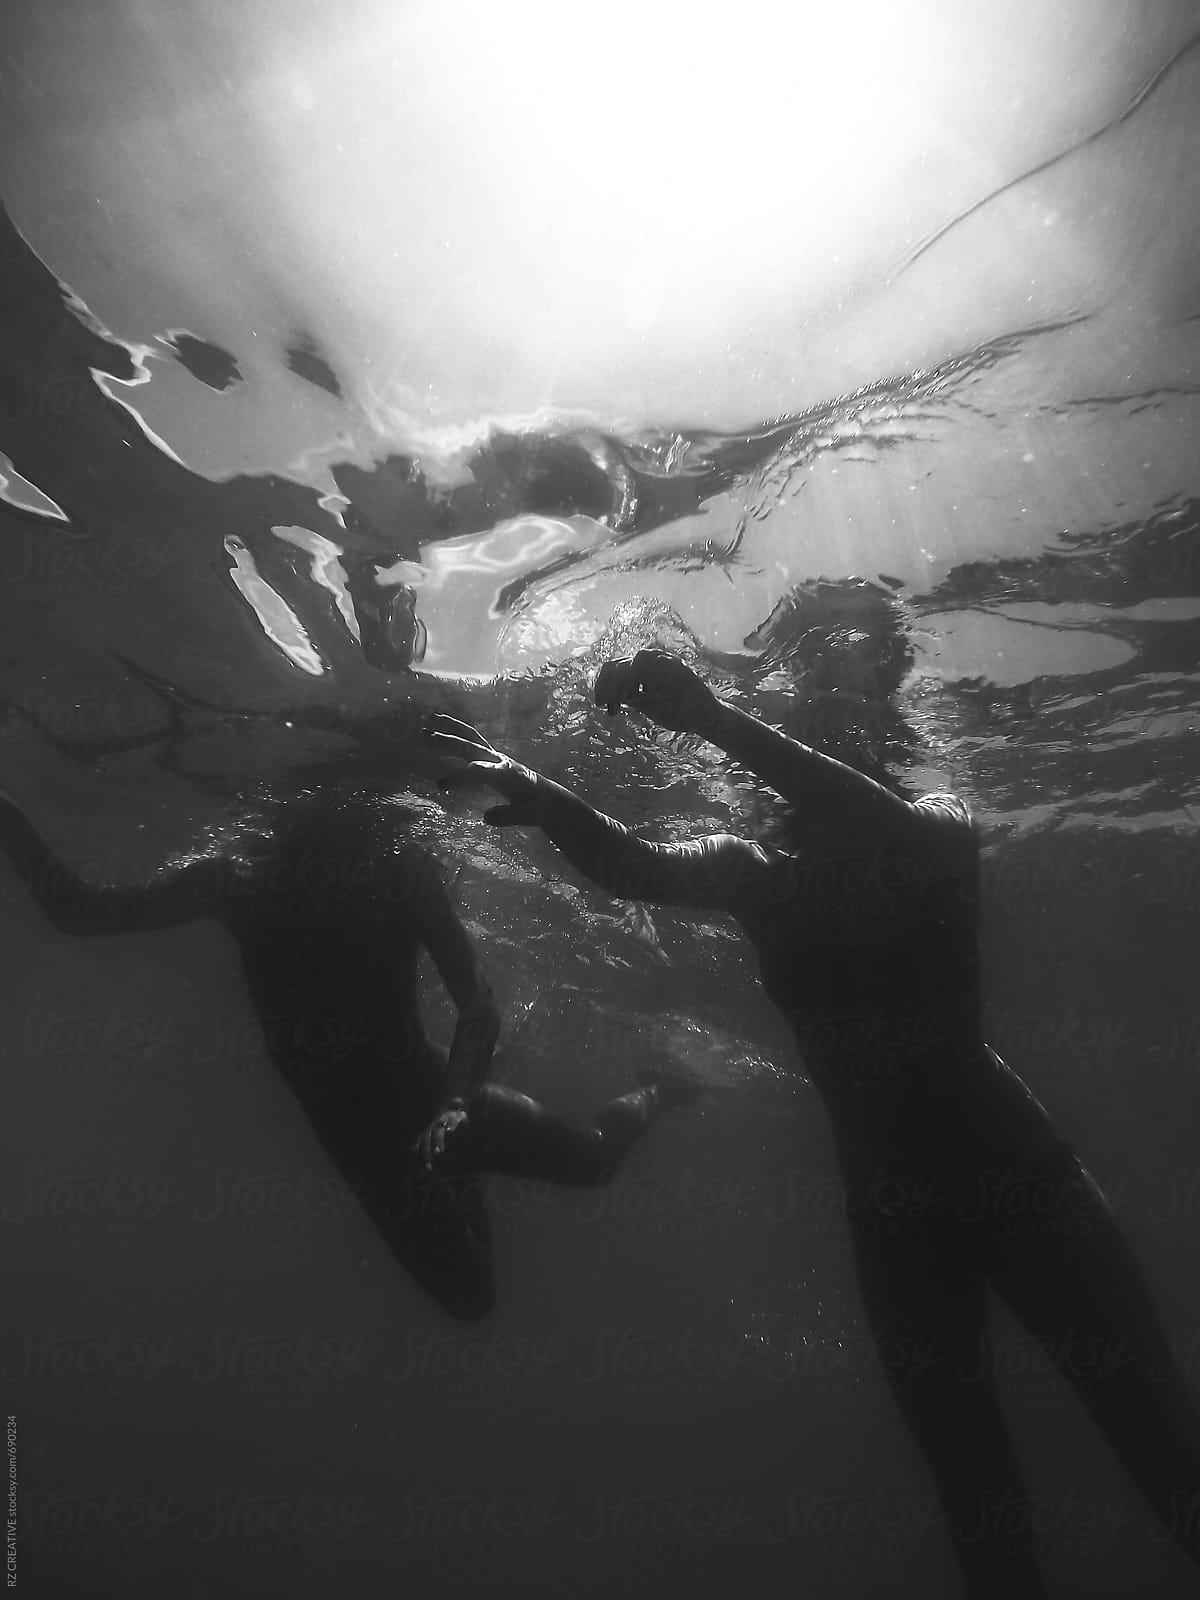 Two women underwater snorkeling.